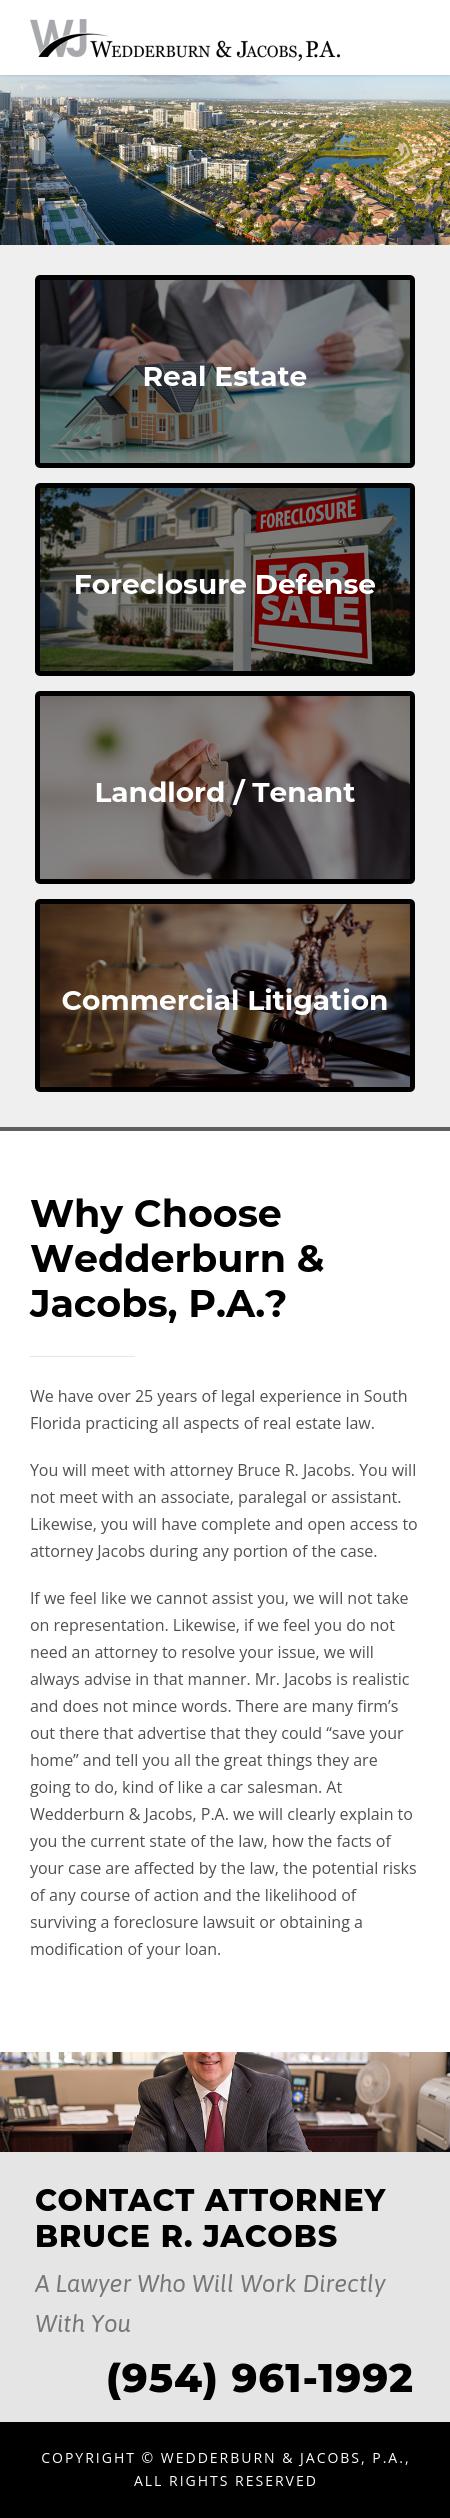 Wedderburn & Jacobs, P.A. - Hollywood FL Lawyers